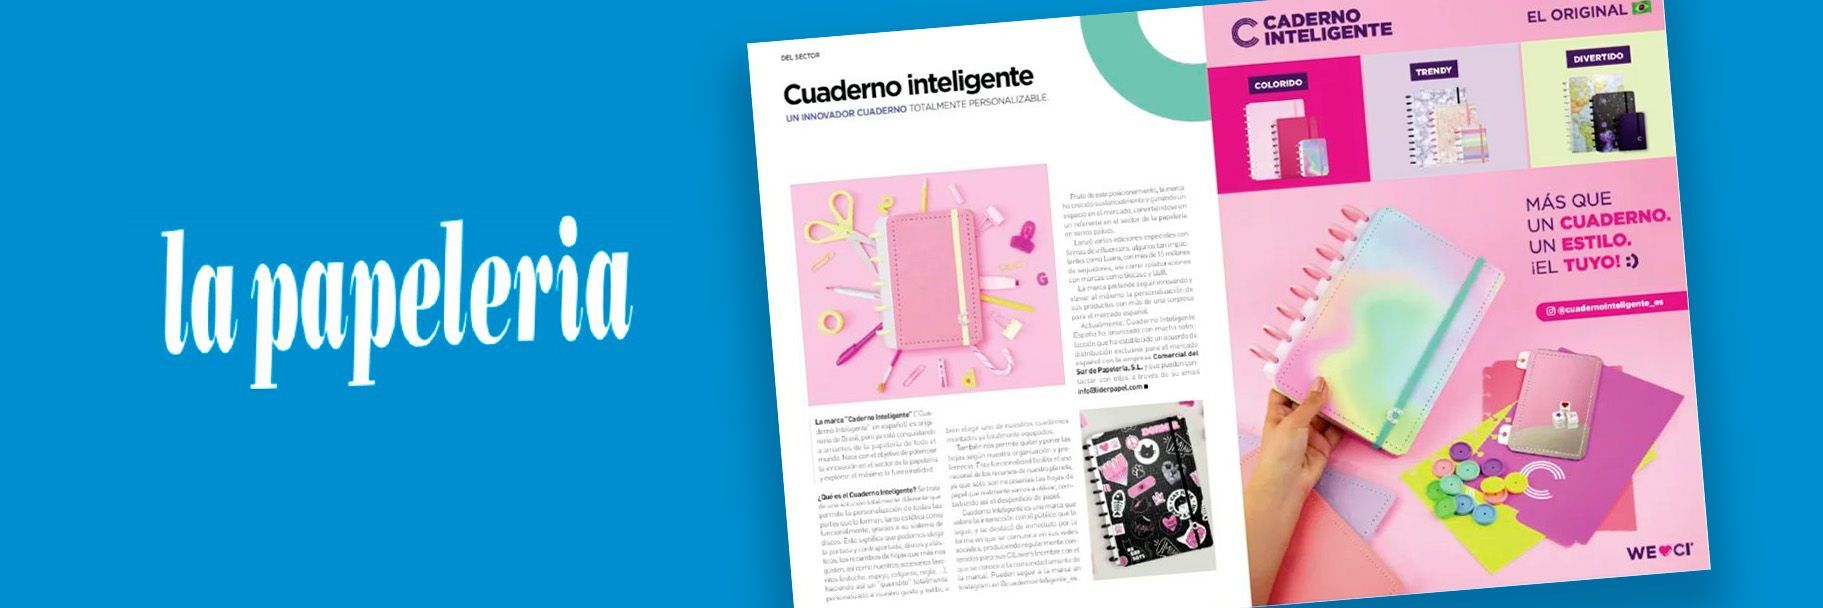 Caderno Inteligente na revista La Papelaria em Espanha